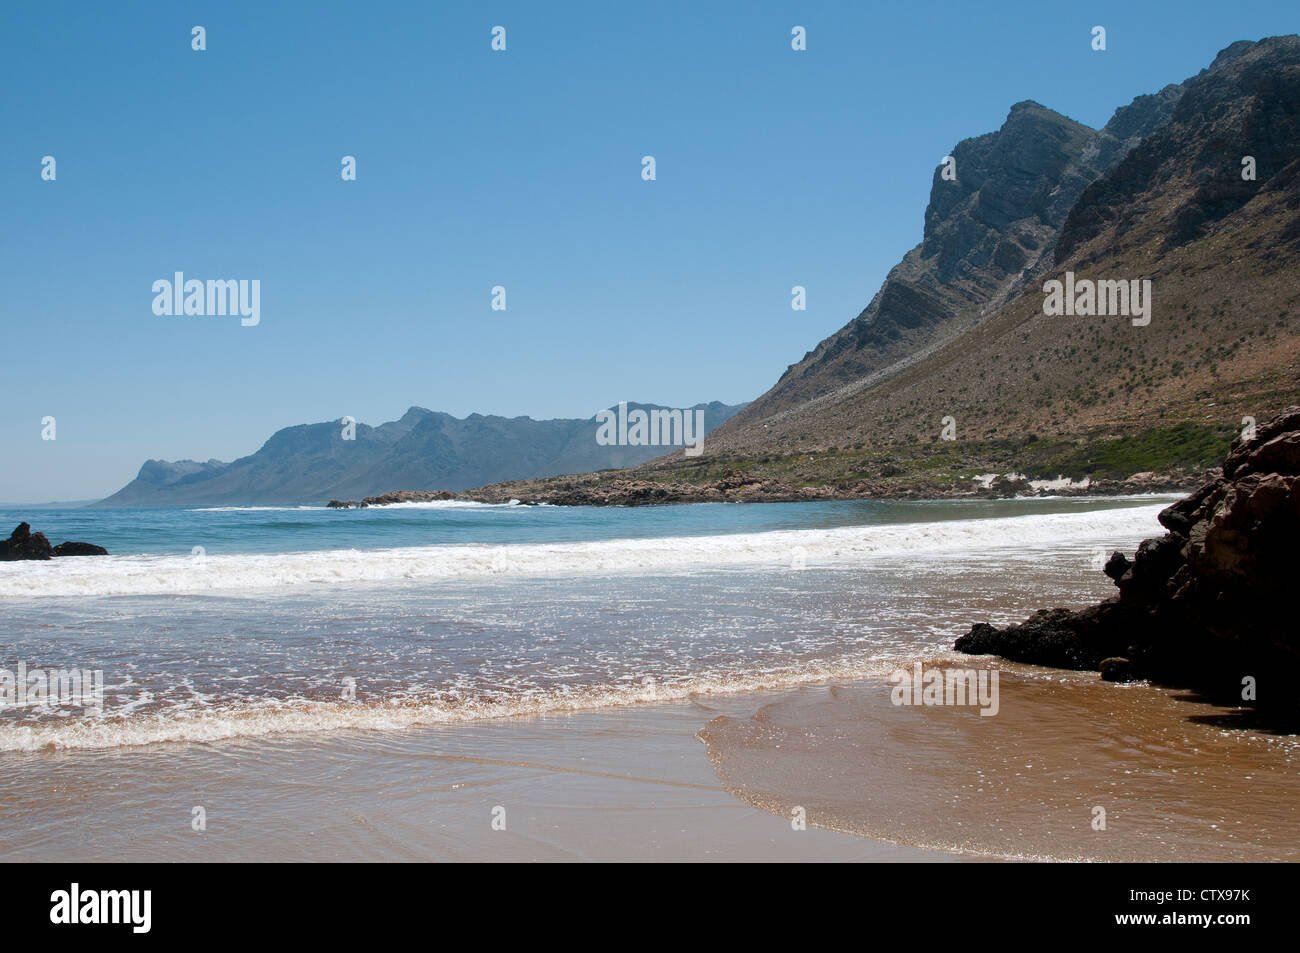 Mare & Monti a Rooi Els una località costiera sull'Oceano Atlantico Western Cape Sud Africa Foto Stock